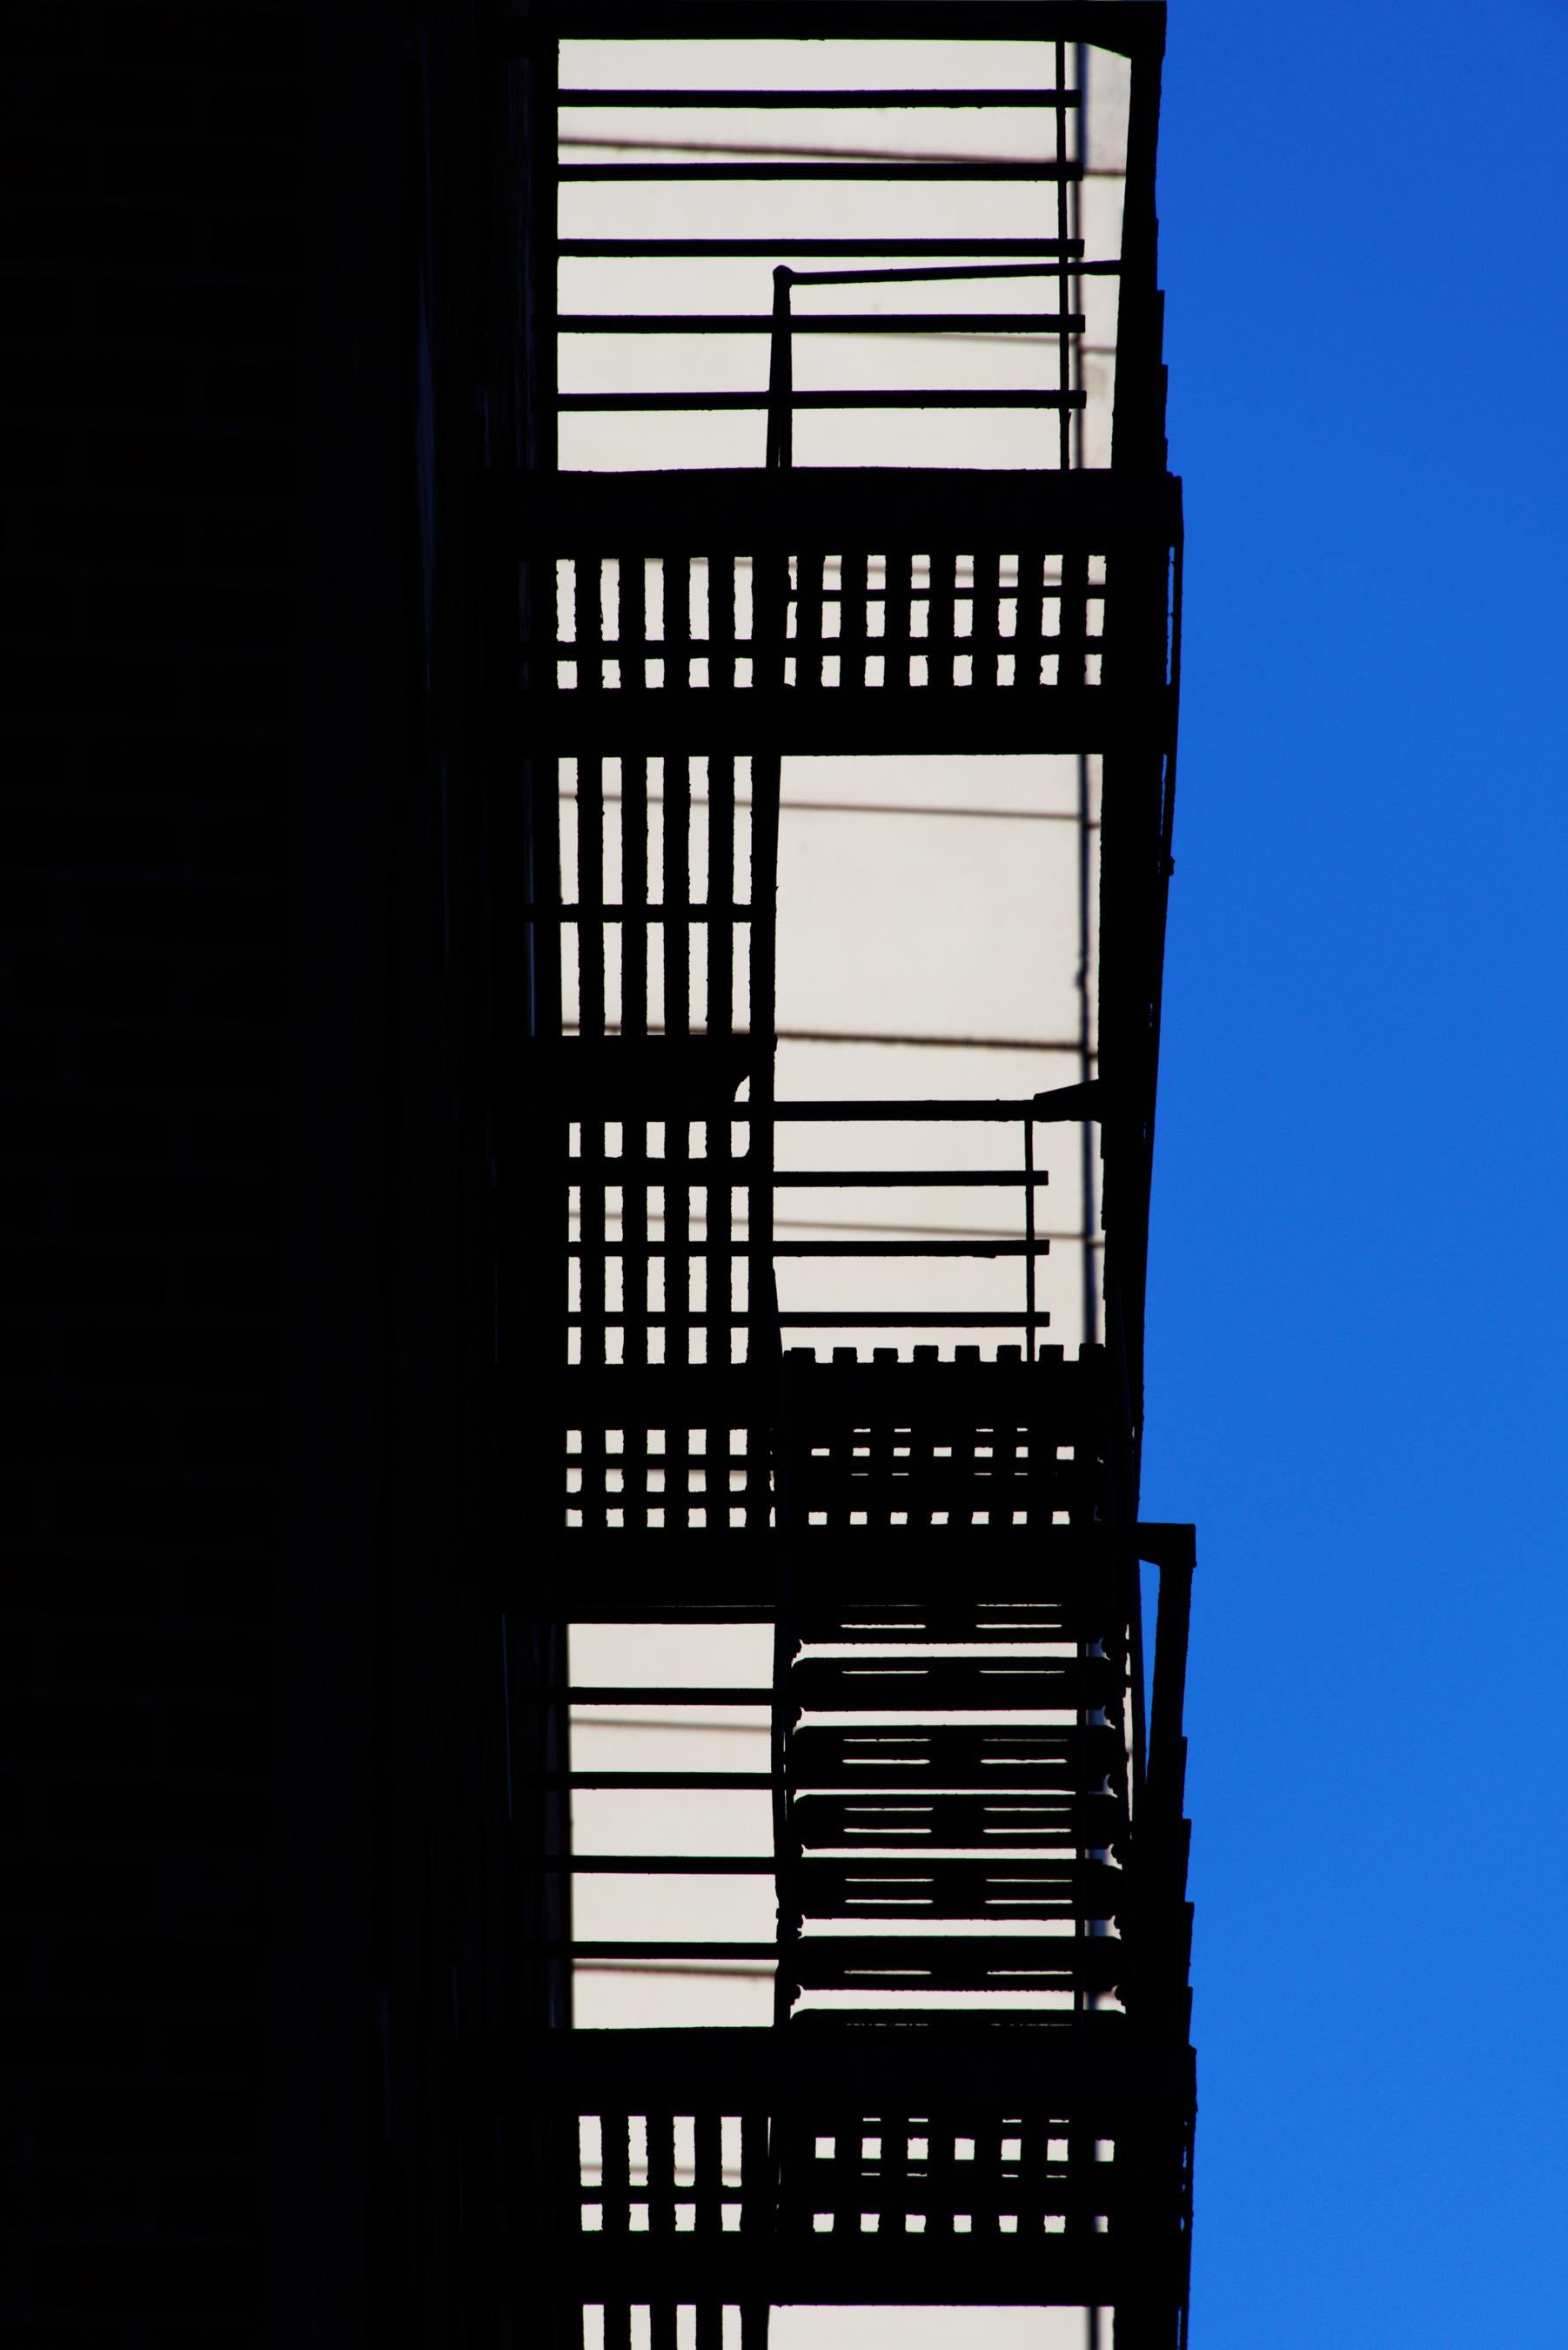 ""Fire Escape", photographie, ville, architecture, géométrie, motif, escaliers, bleu